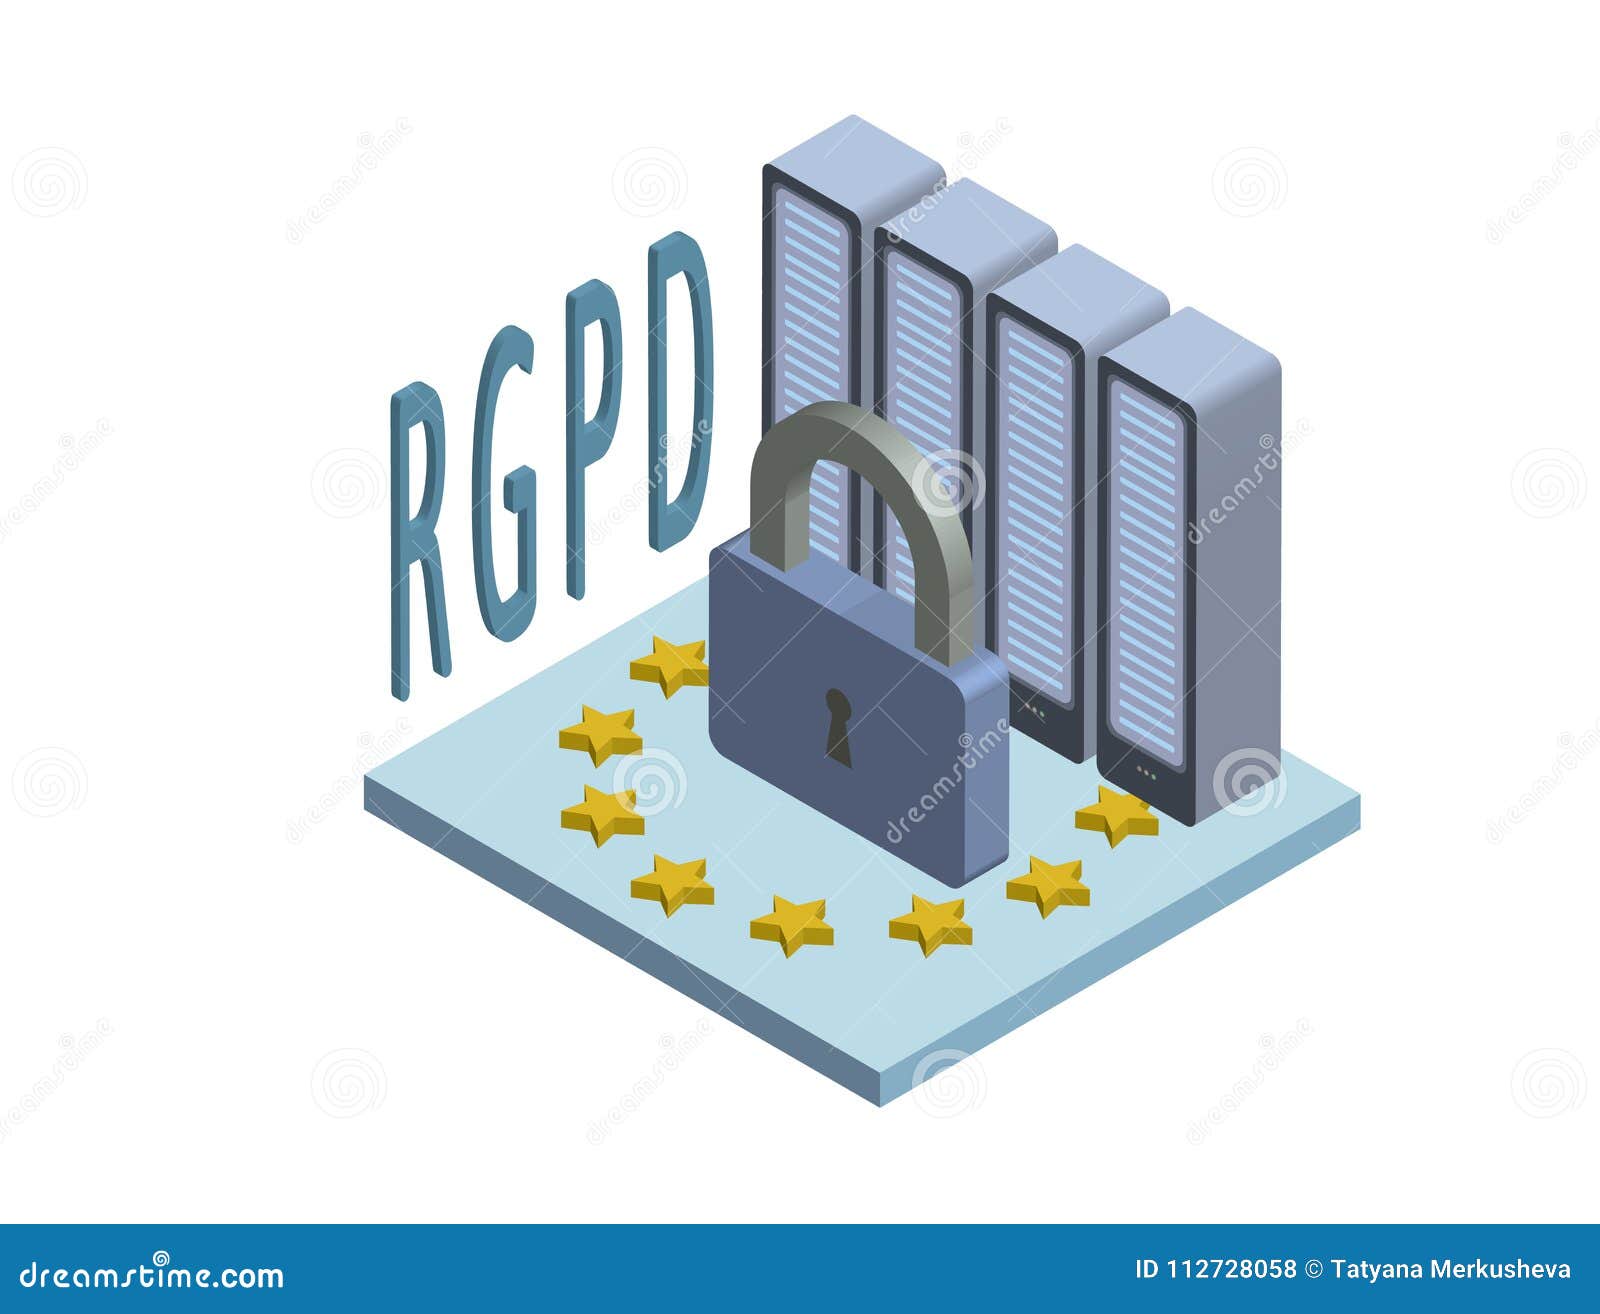 rgpd, spanish and italian version version of gdpr, regolamento generale sulla protezione dei dati. concept isometric